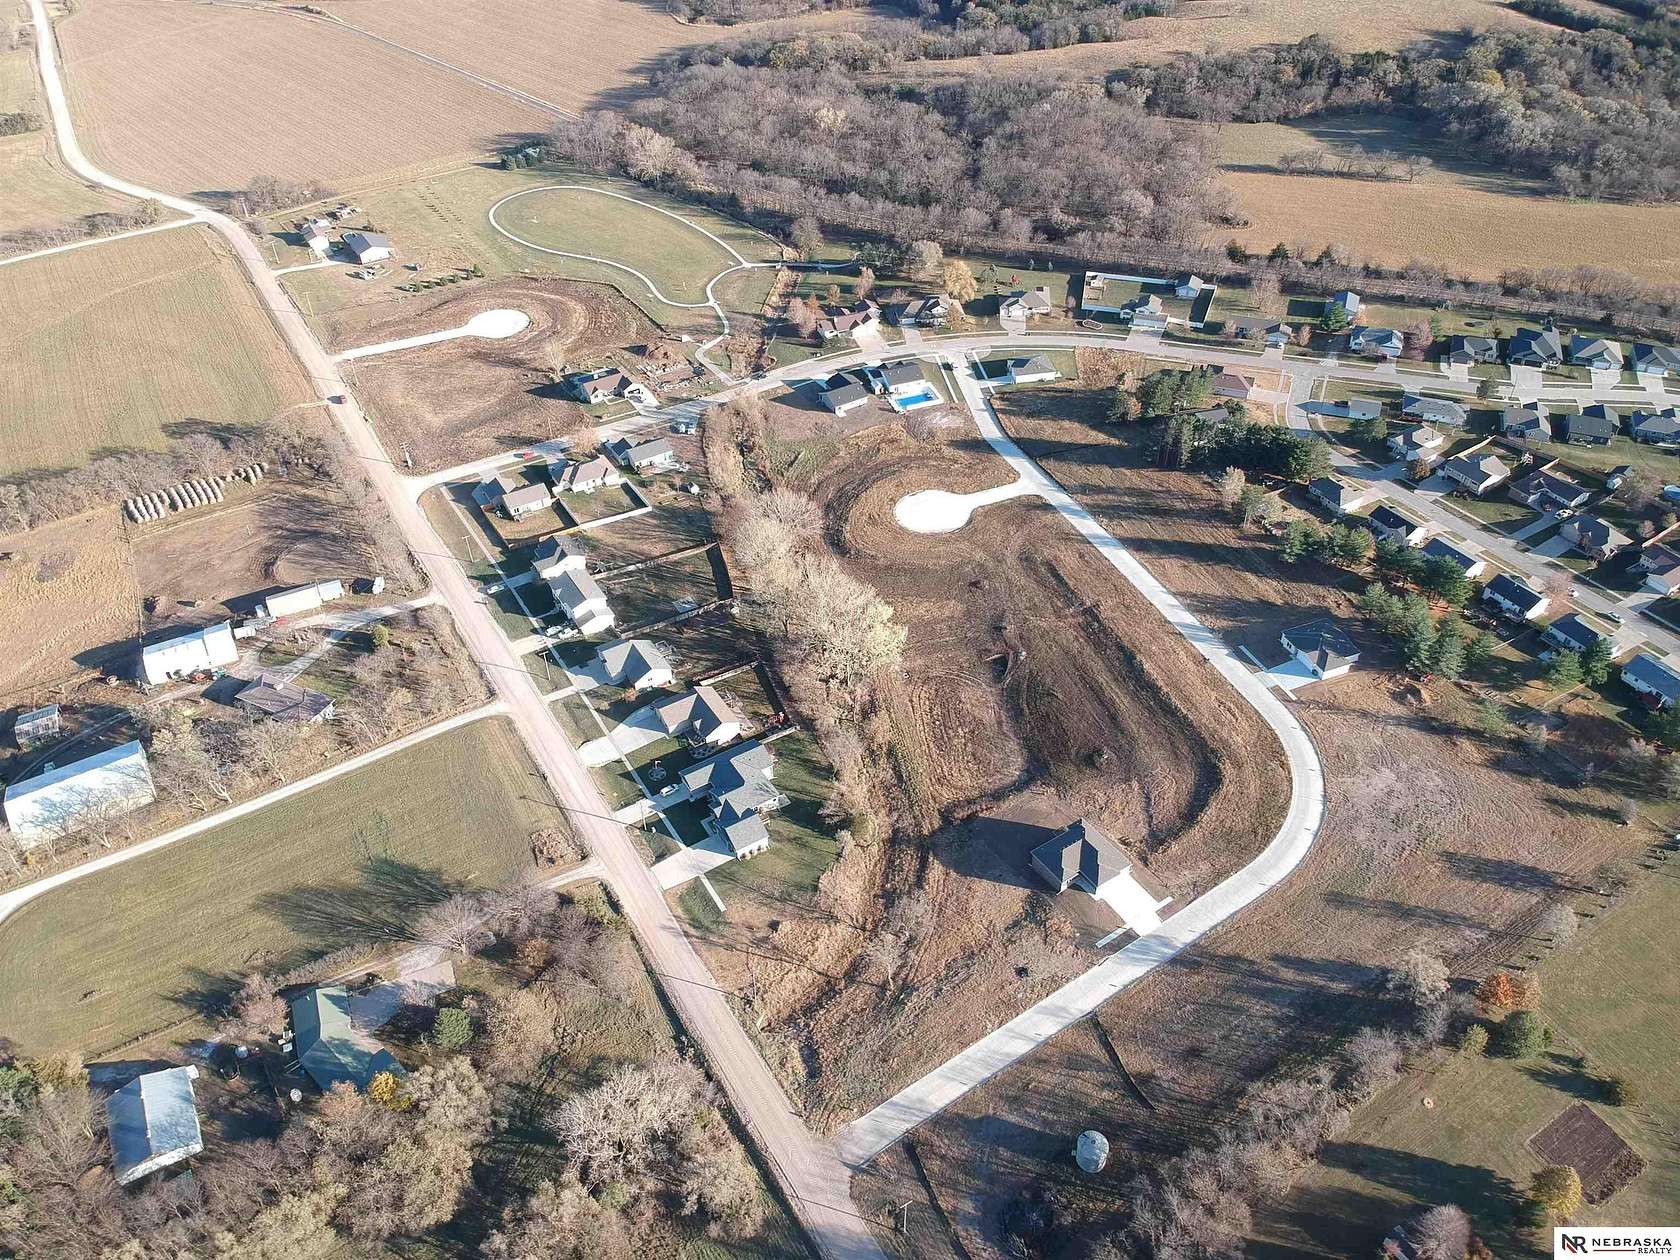 0.2 Acres of Residential Land for Sale in Bennet, Nebraska